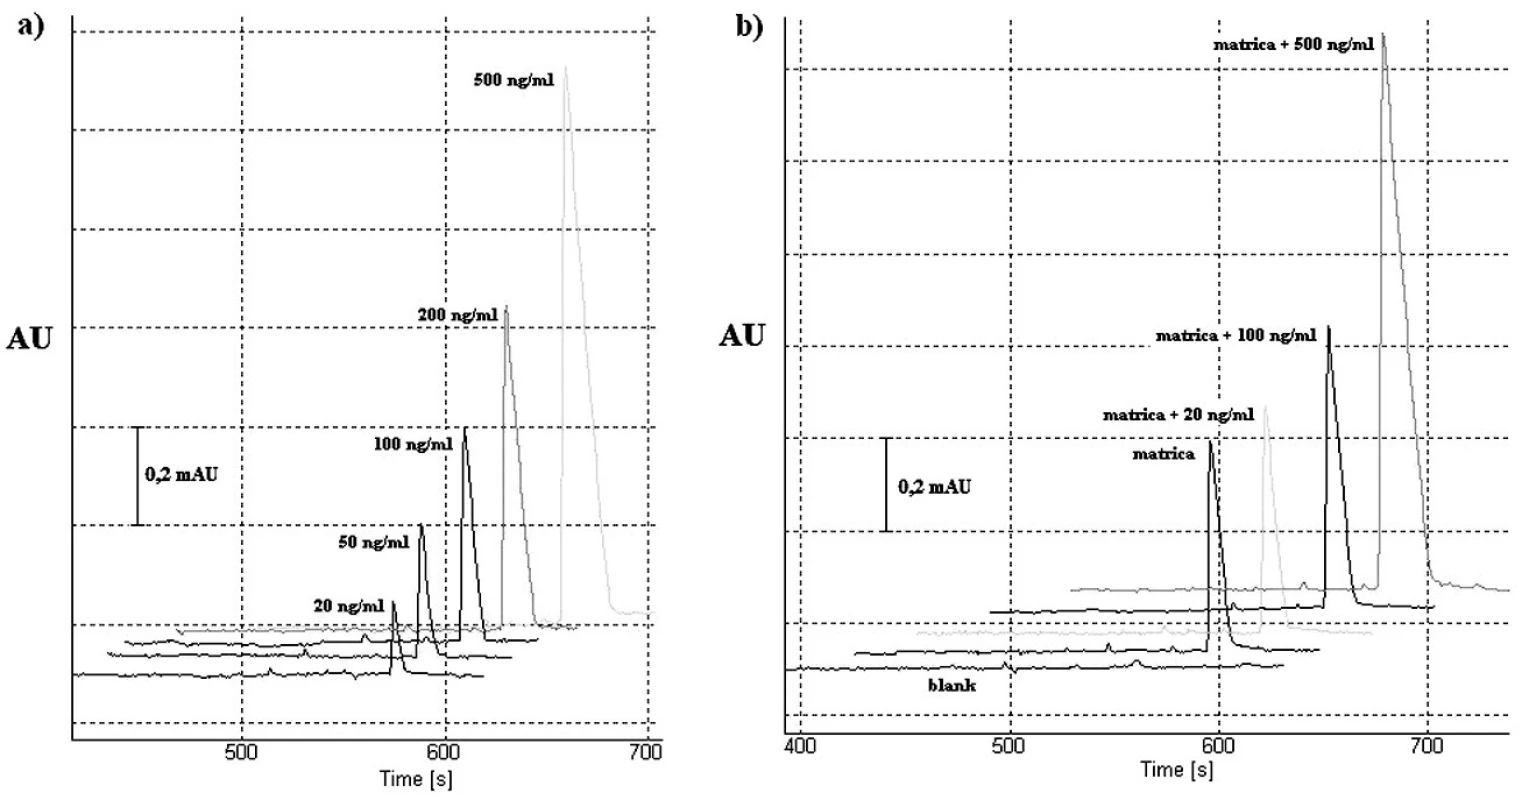 Elektroforeogramy validačného procesu CITP-CZE metódy: a) roztoky štandardu vareniklínu o rôznej koncentrácii (testovanie linearity); b) testovanie výťažnosti. Detekcia v CZE kroku bola uskutočnená s nastavenou vlnovou dĺžkou 237 nm. Použité vodiace prúdy boli 300 μA (CITP) a 40 μA (CZE). Ostatné separačné podmienky sú uvedené v časti Optimalizácia separačných podmienok pre CITP-CZE experiment.